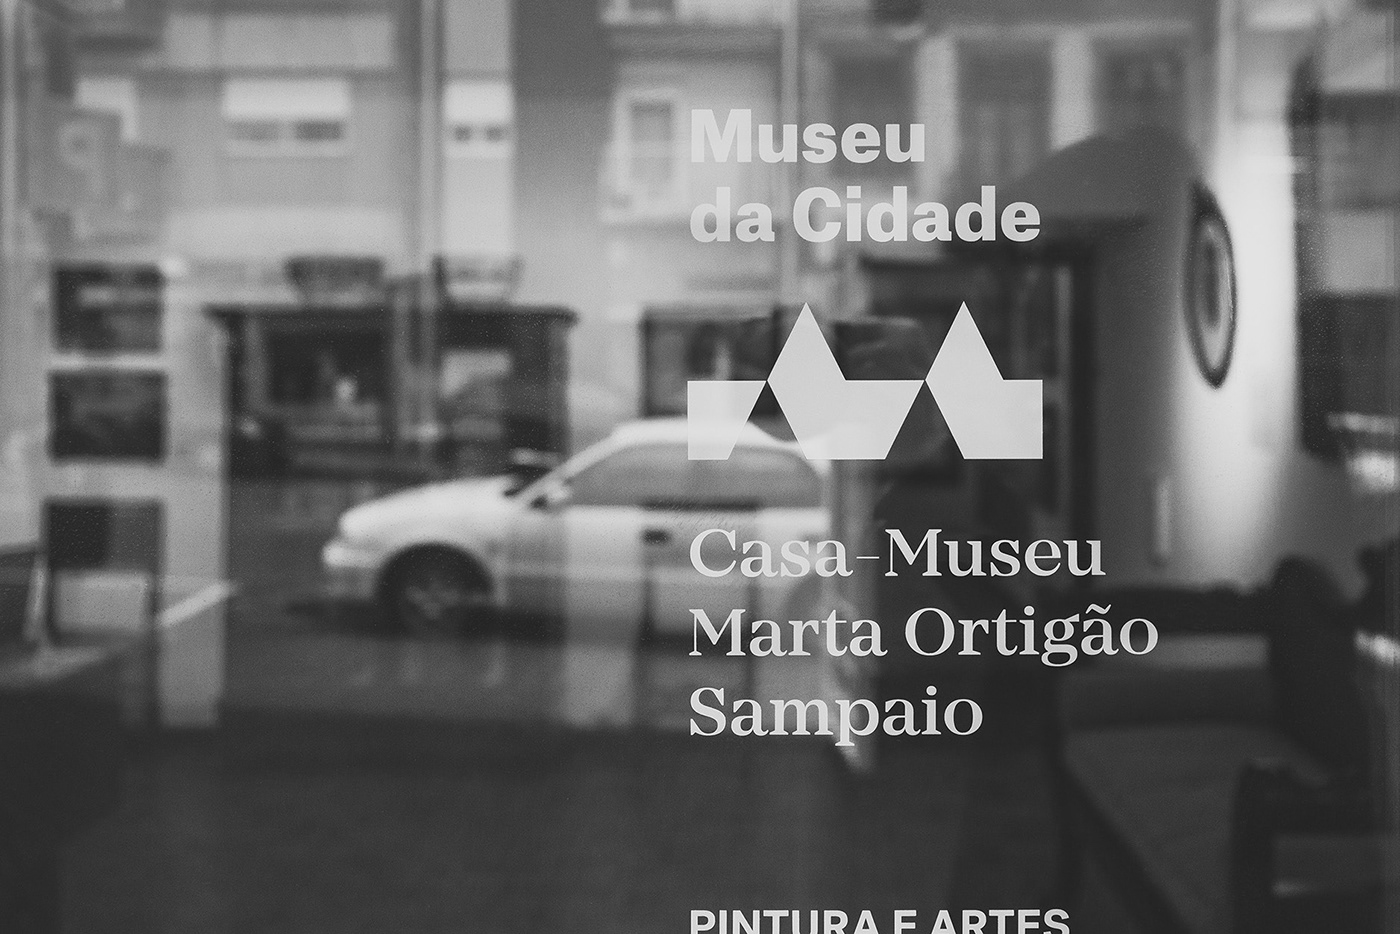 Museu da Cidade porto brand another collective museum